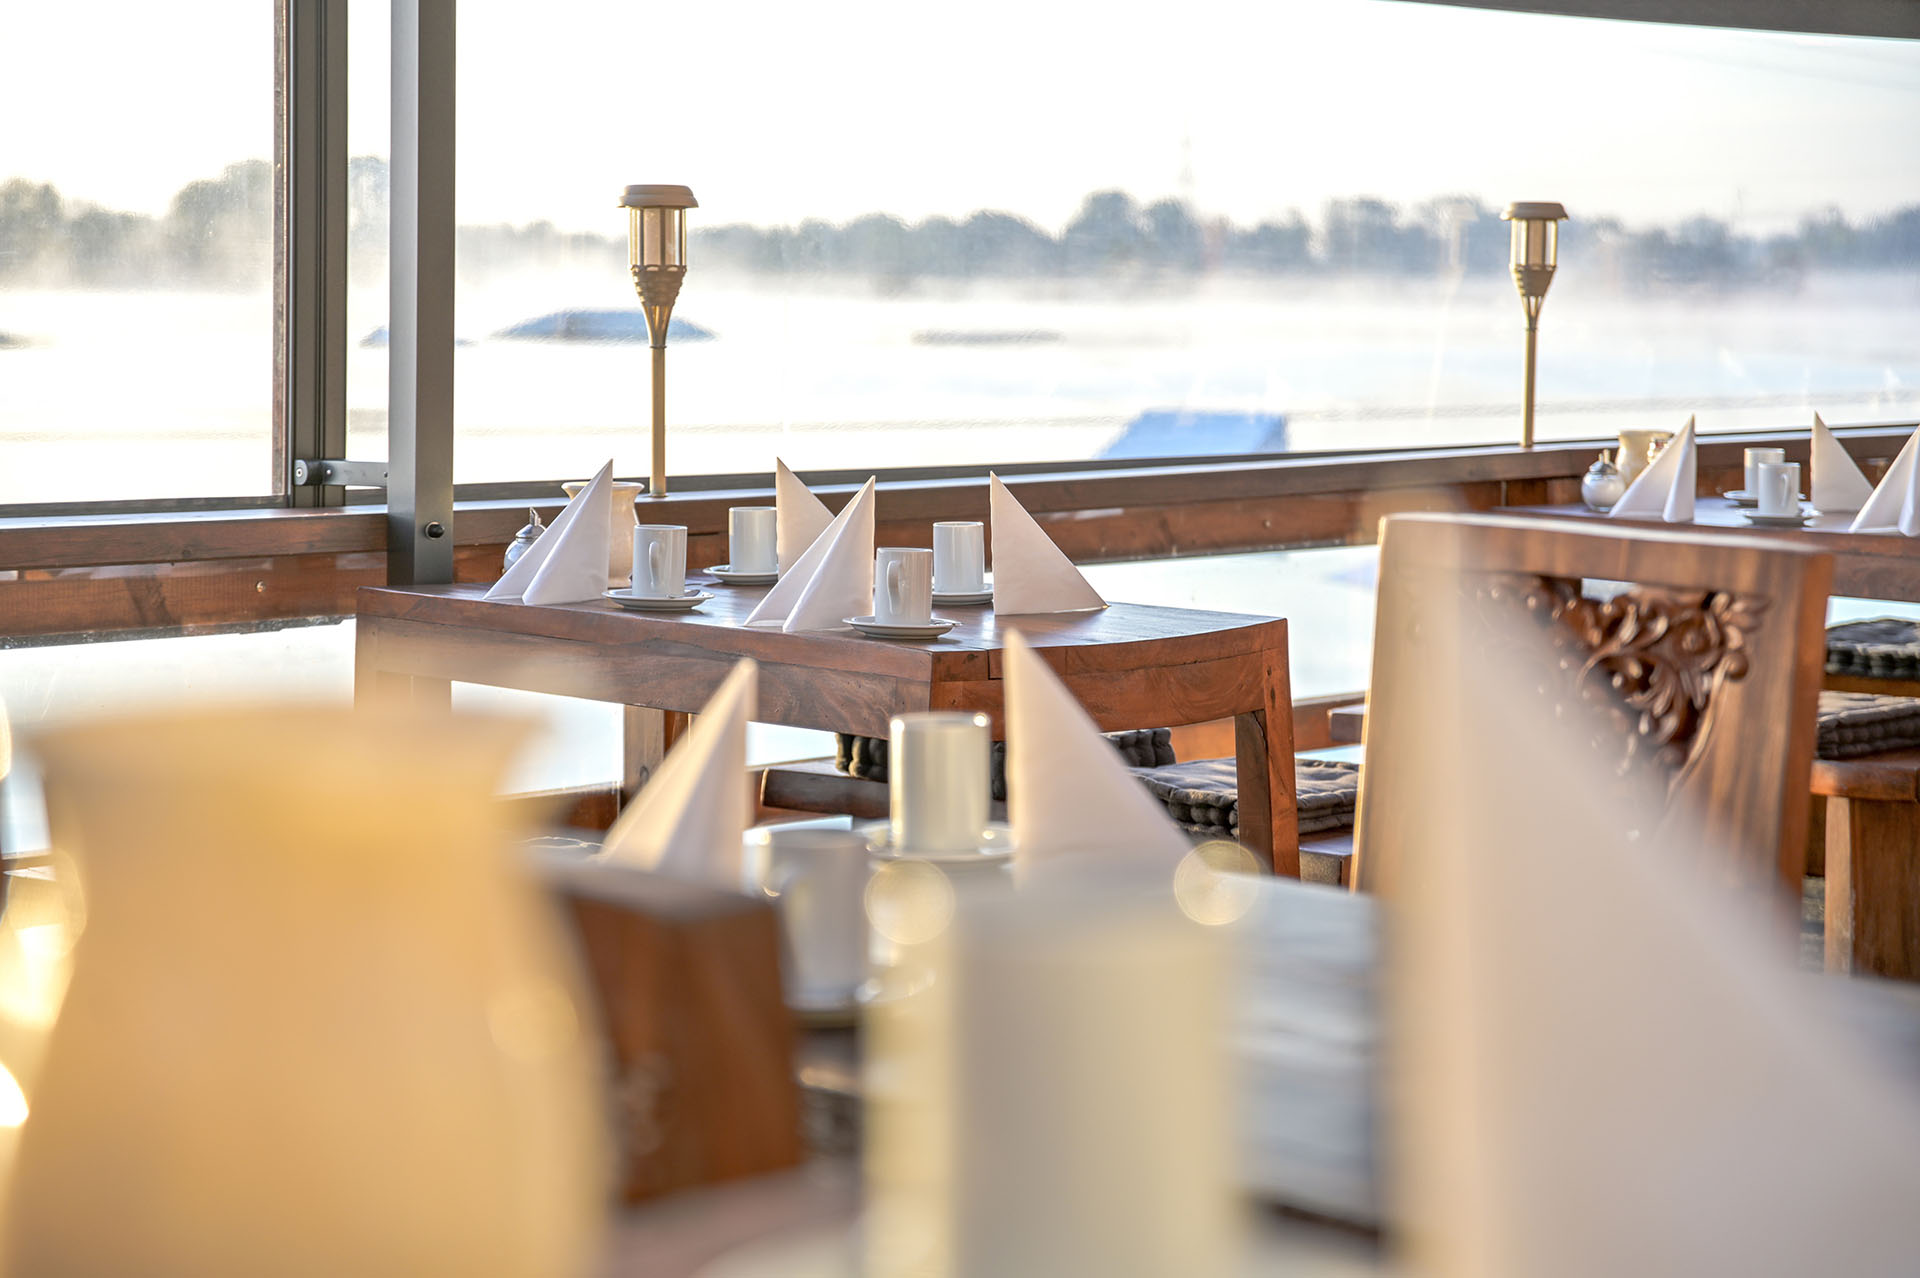 Der Outdoorbereich des Restaurant Eisvogel ist wind- und wetterfest, damit die Gäste auch wenn das Wetter nicht ganz so gut ist die tolle Atmosphäre und die Leckereien genießen können.